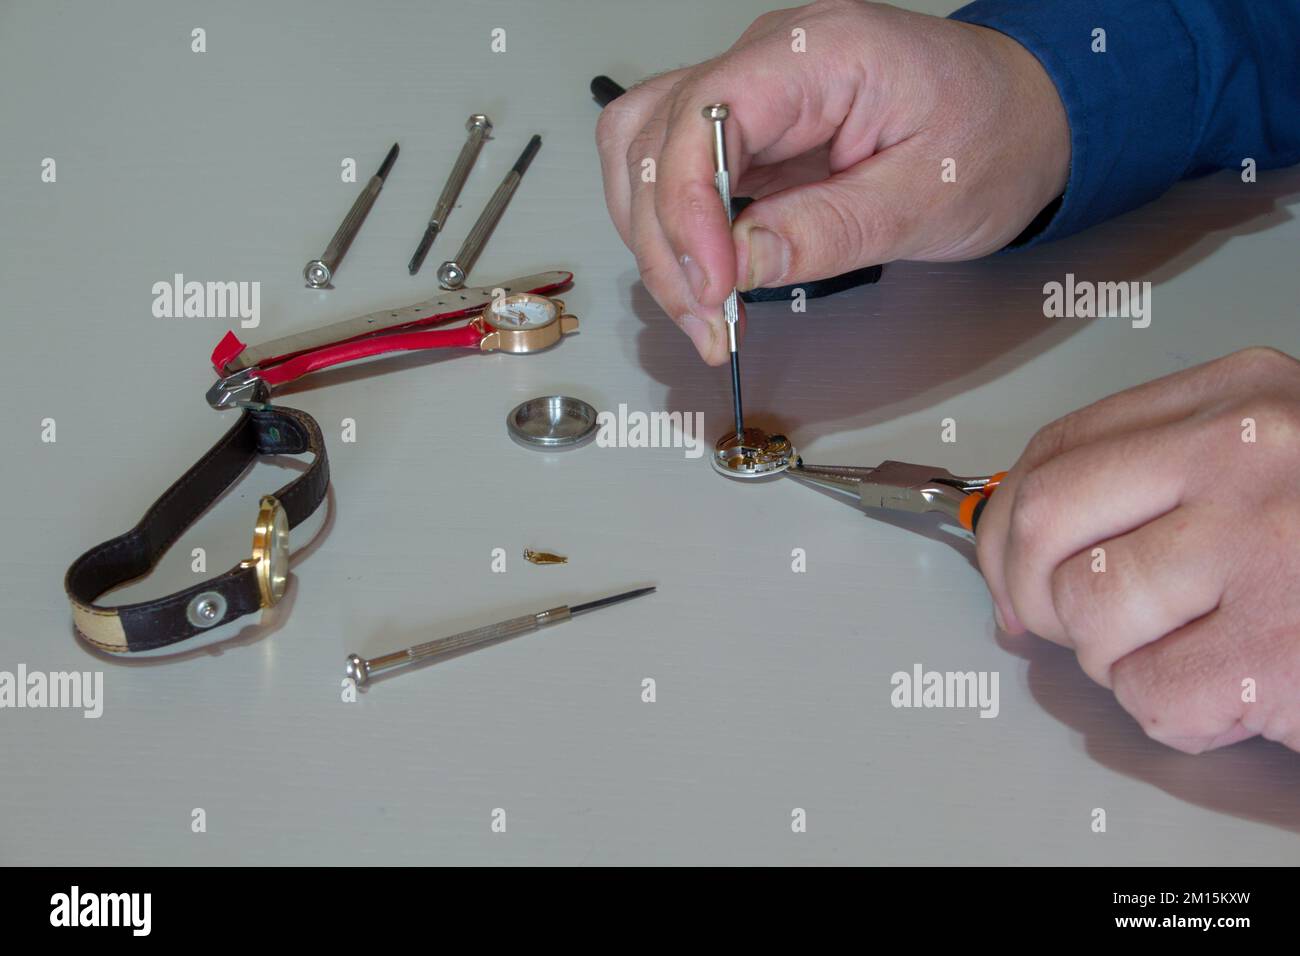 Bild der Hände eines Goldschmieds, der eine kleine Armbanduhr mit den Werkzeugen des Handwerks repariert. Uhrmacher bei der Arbeit. Stockfoto